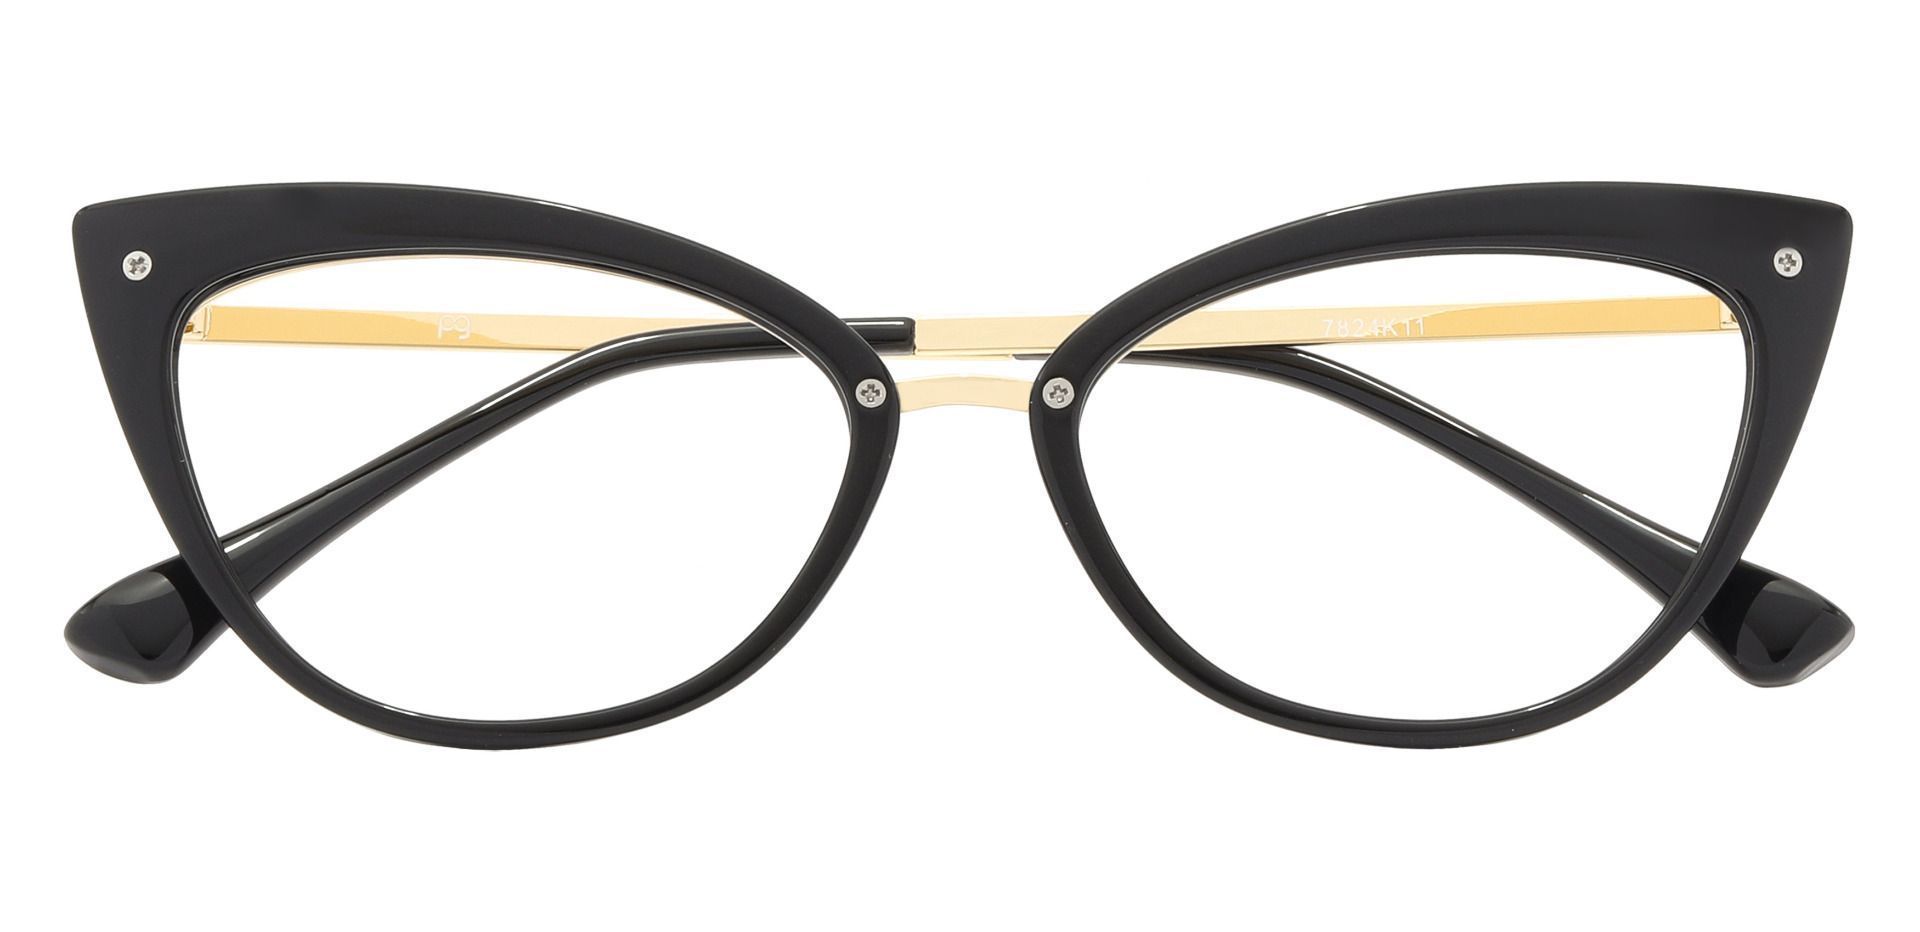 Glenda Cat Eye Prescription Glasses Black Women S Eyeglasses Payne Glasses